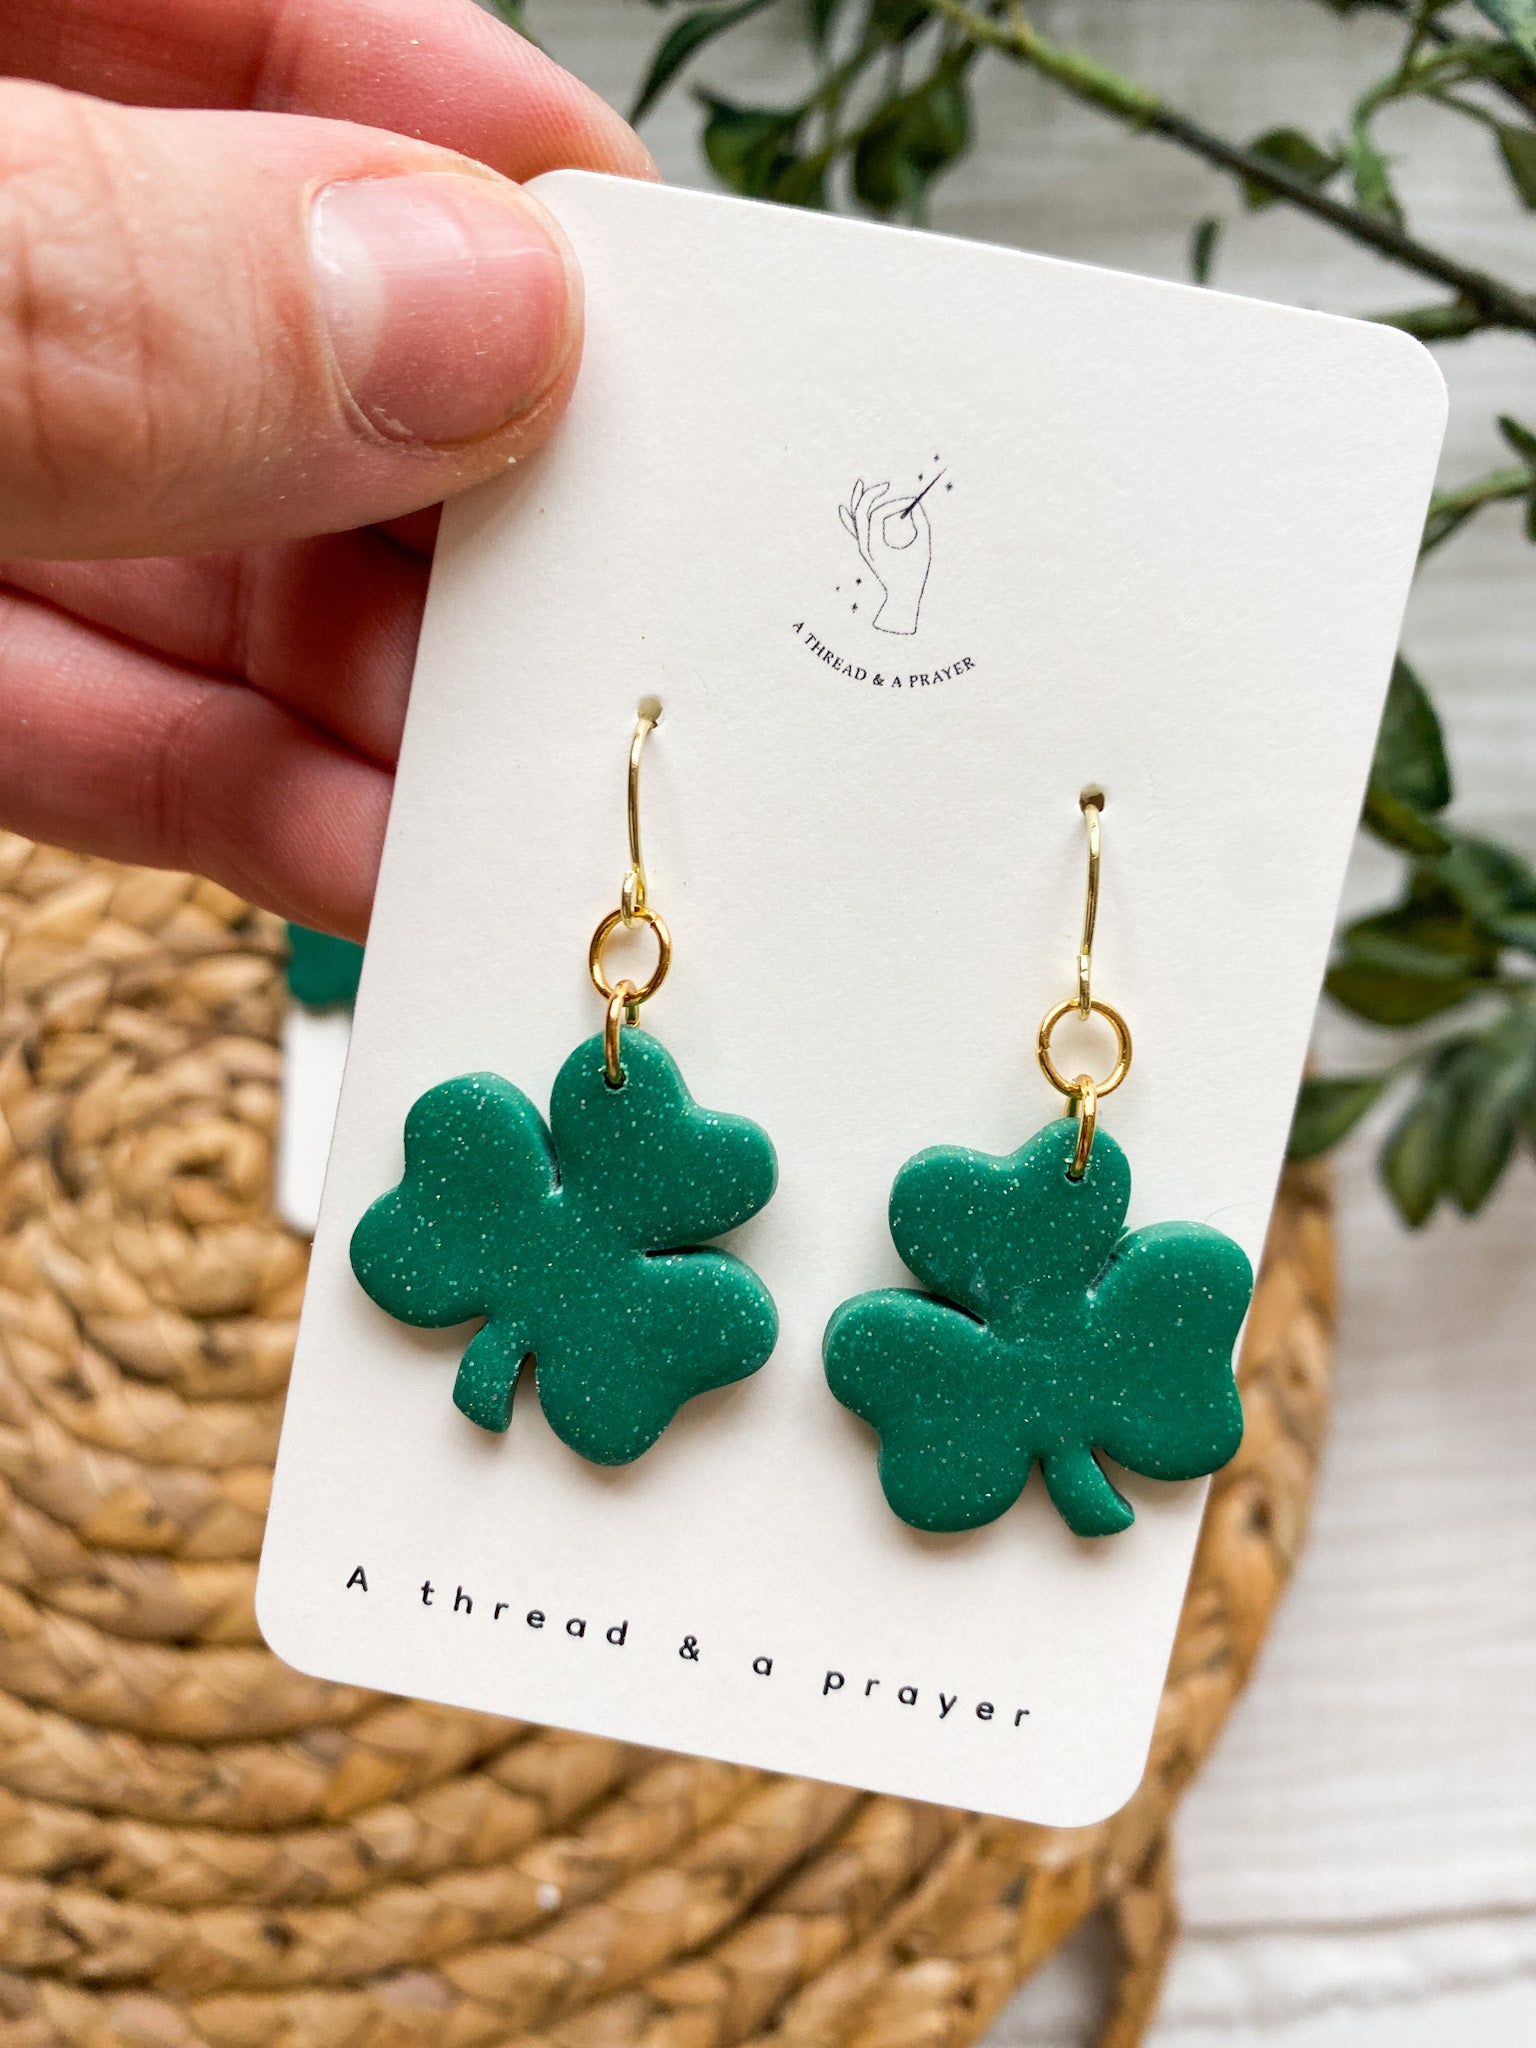 St Patrick’s Day cork earrings, shamrock earrings, st patricks day  earrings, march earrings, st patty's day earrings, shamrock earrings